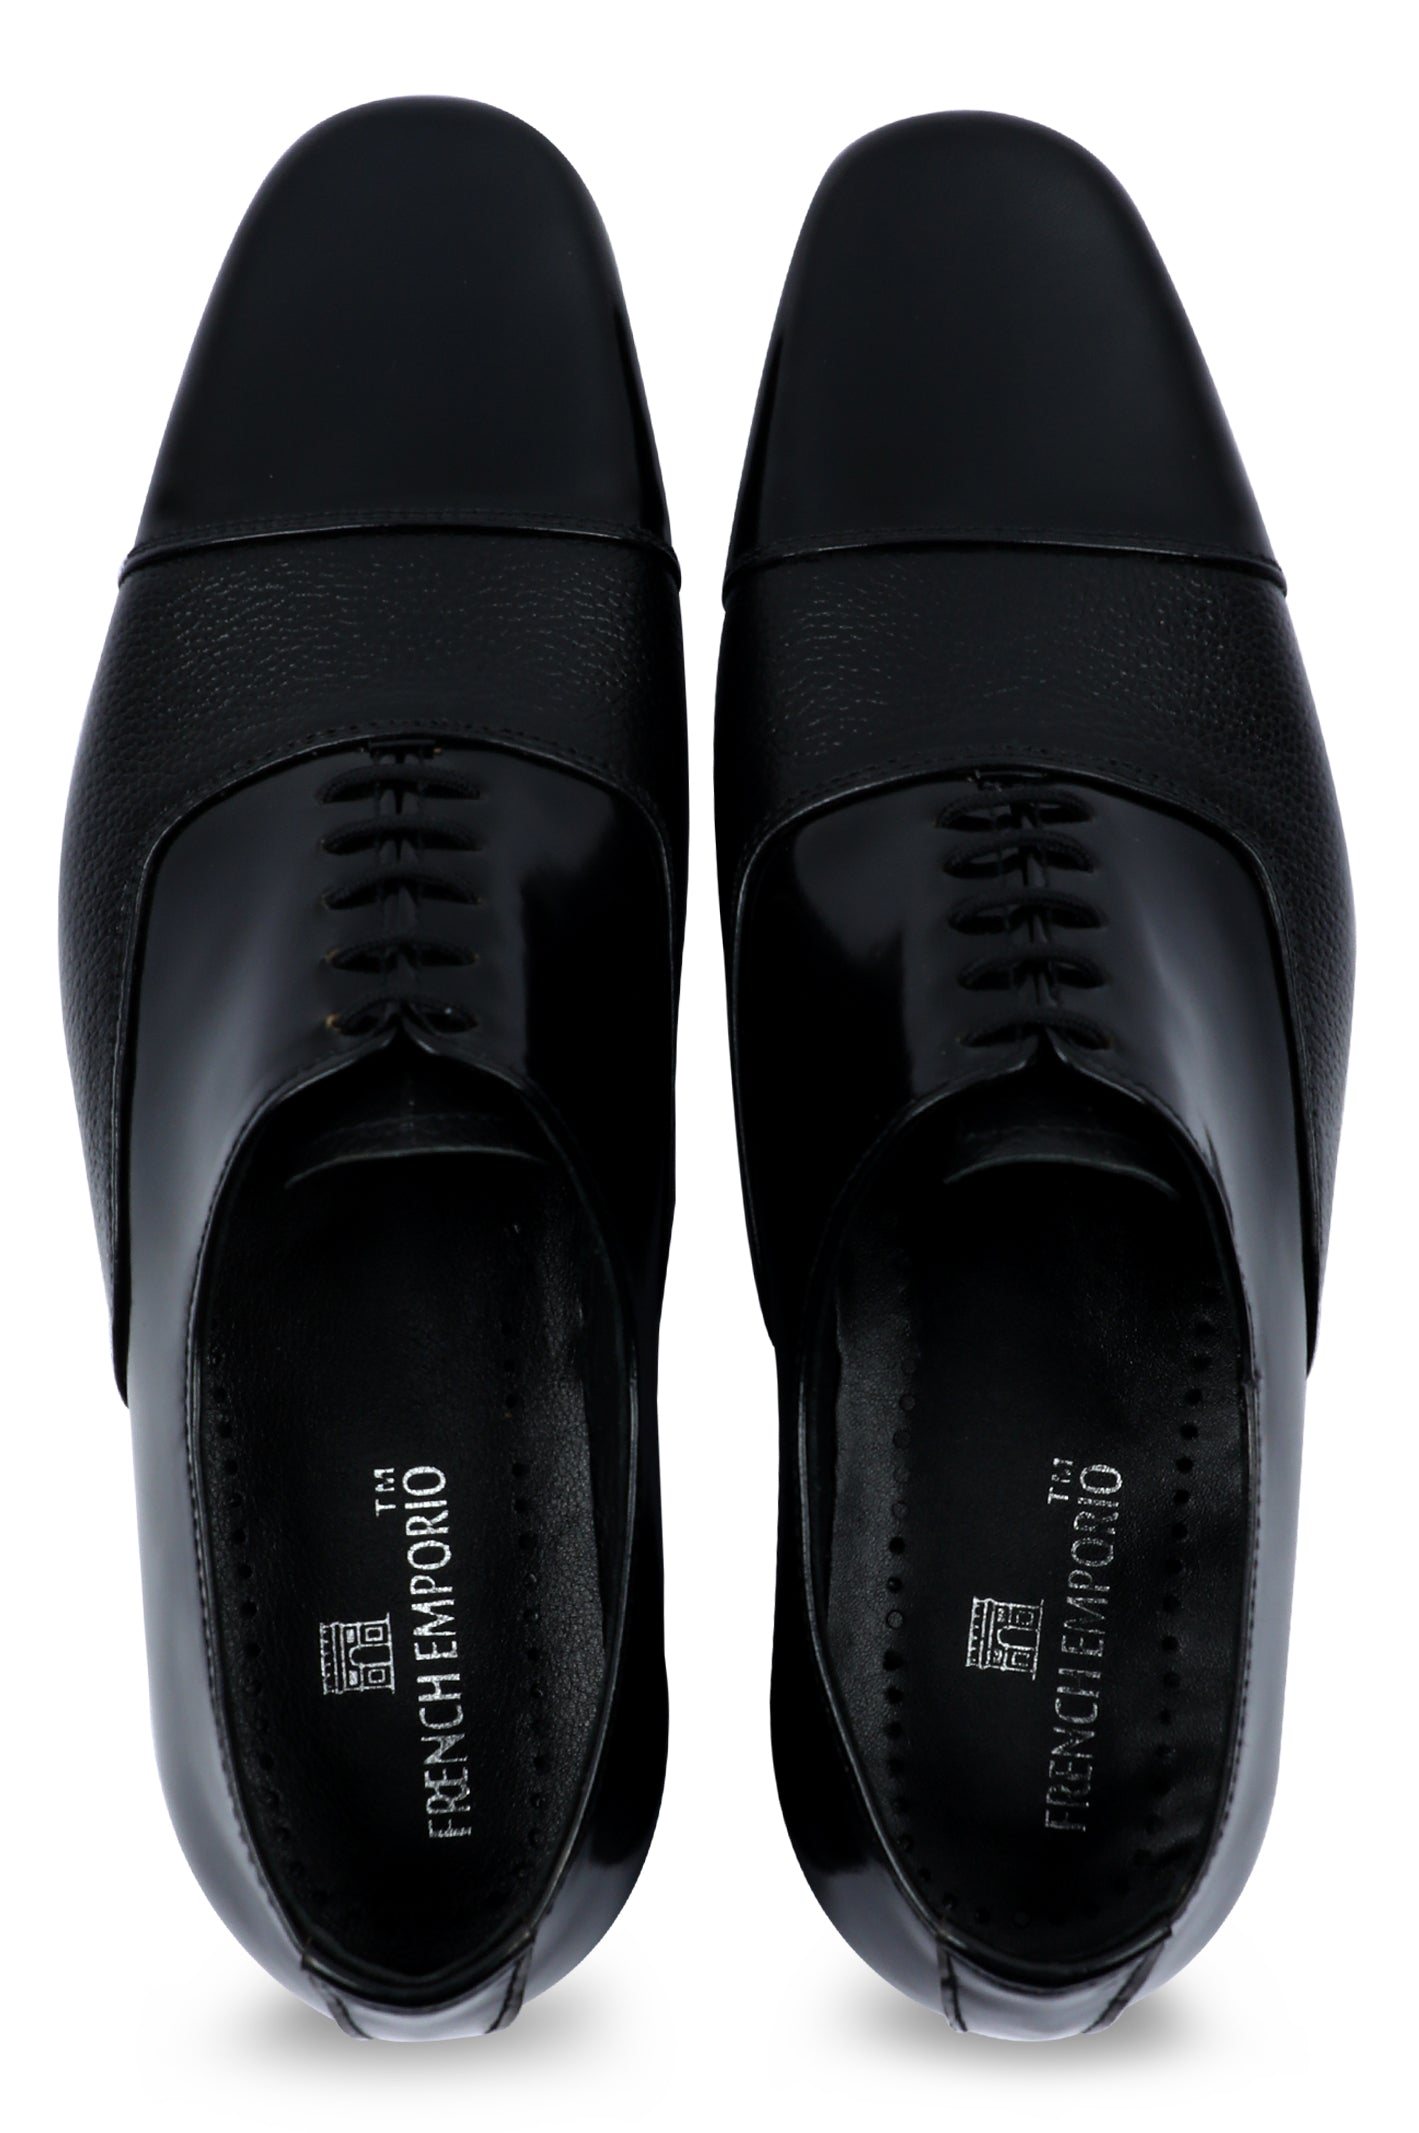 Formal Shoes For Men in Black SKU: SMF-0192-BLACK - Diners